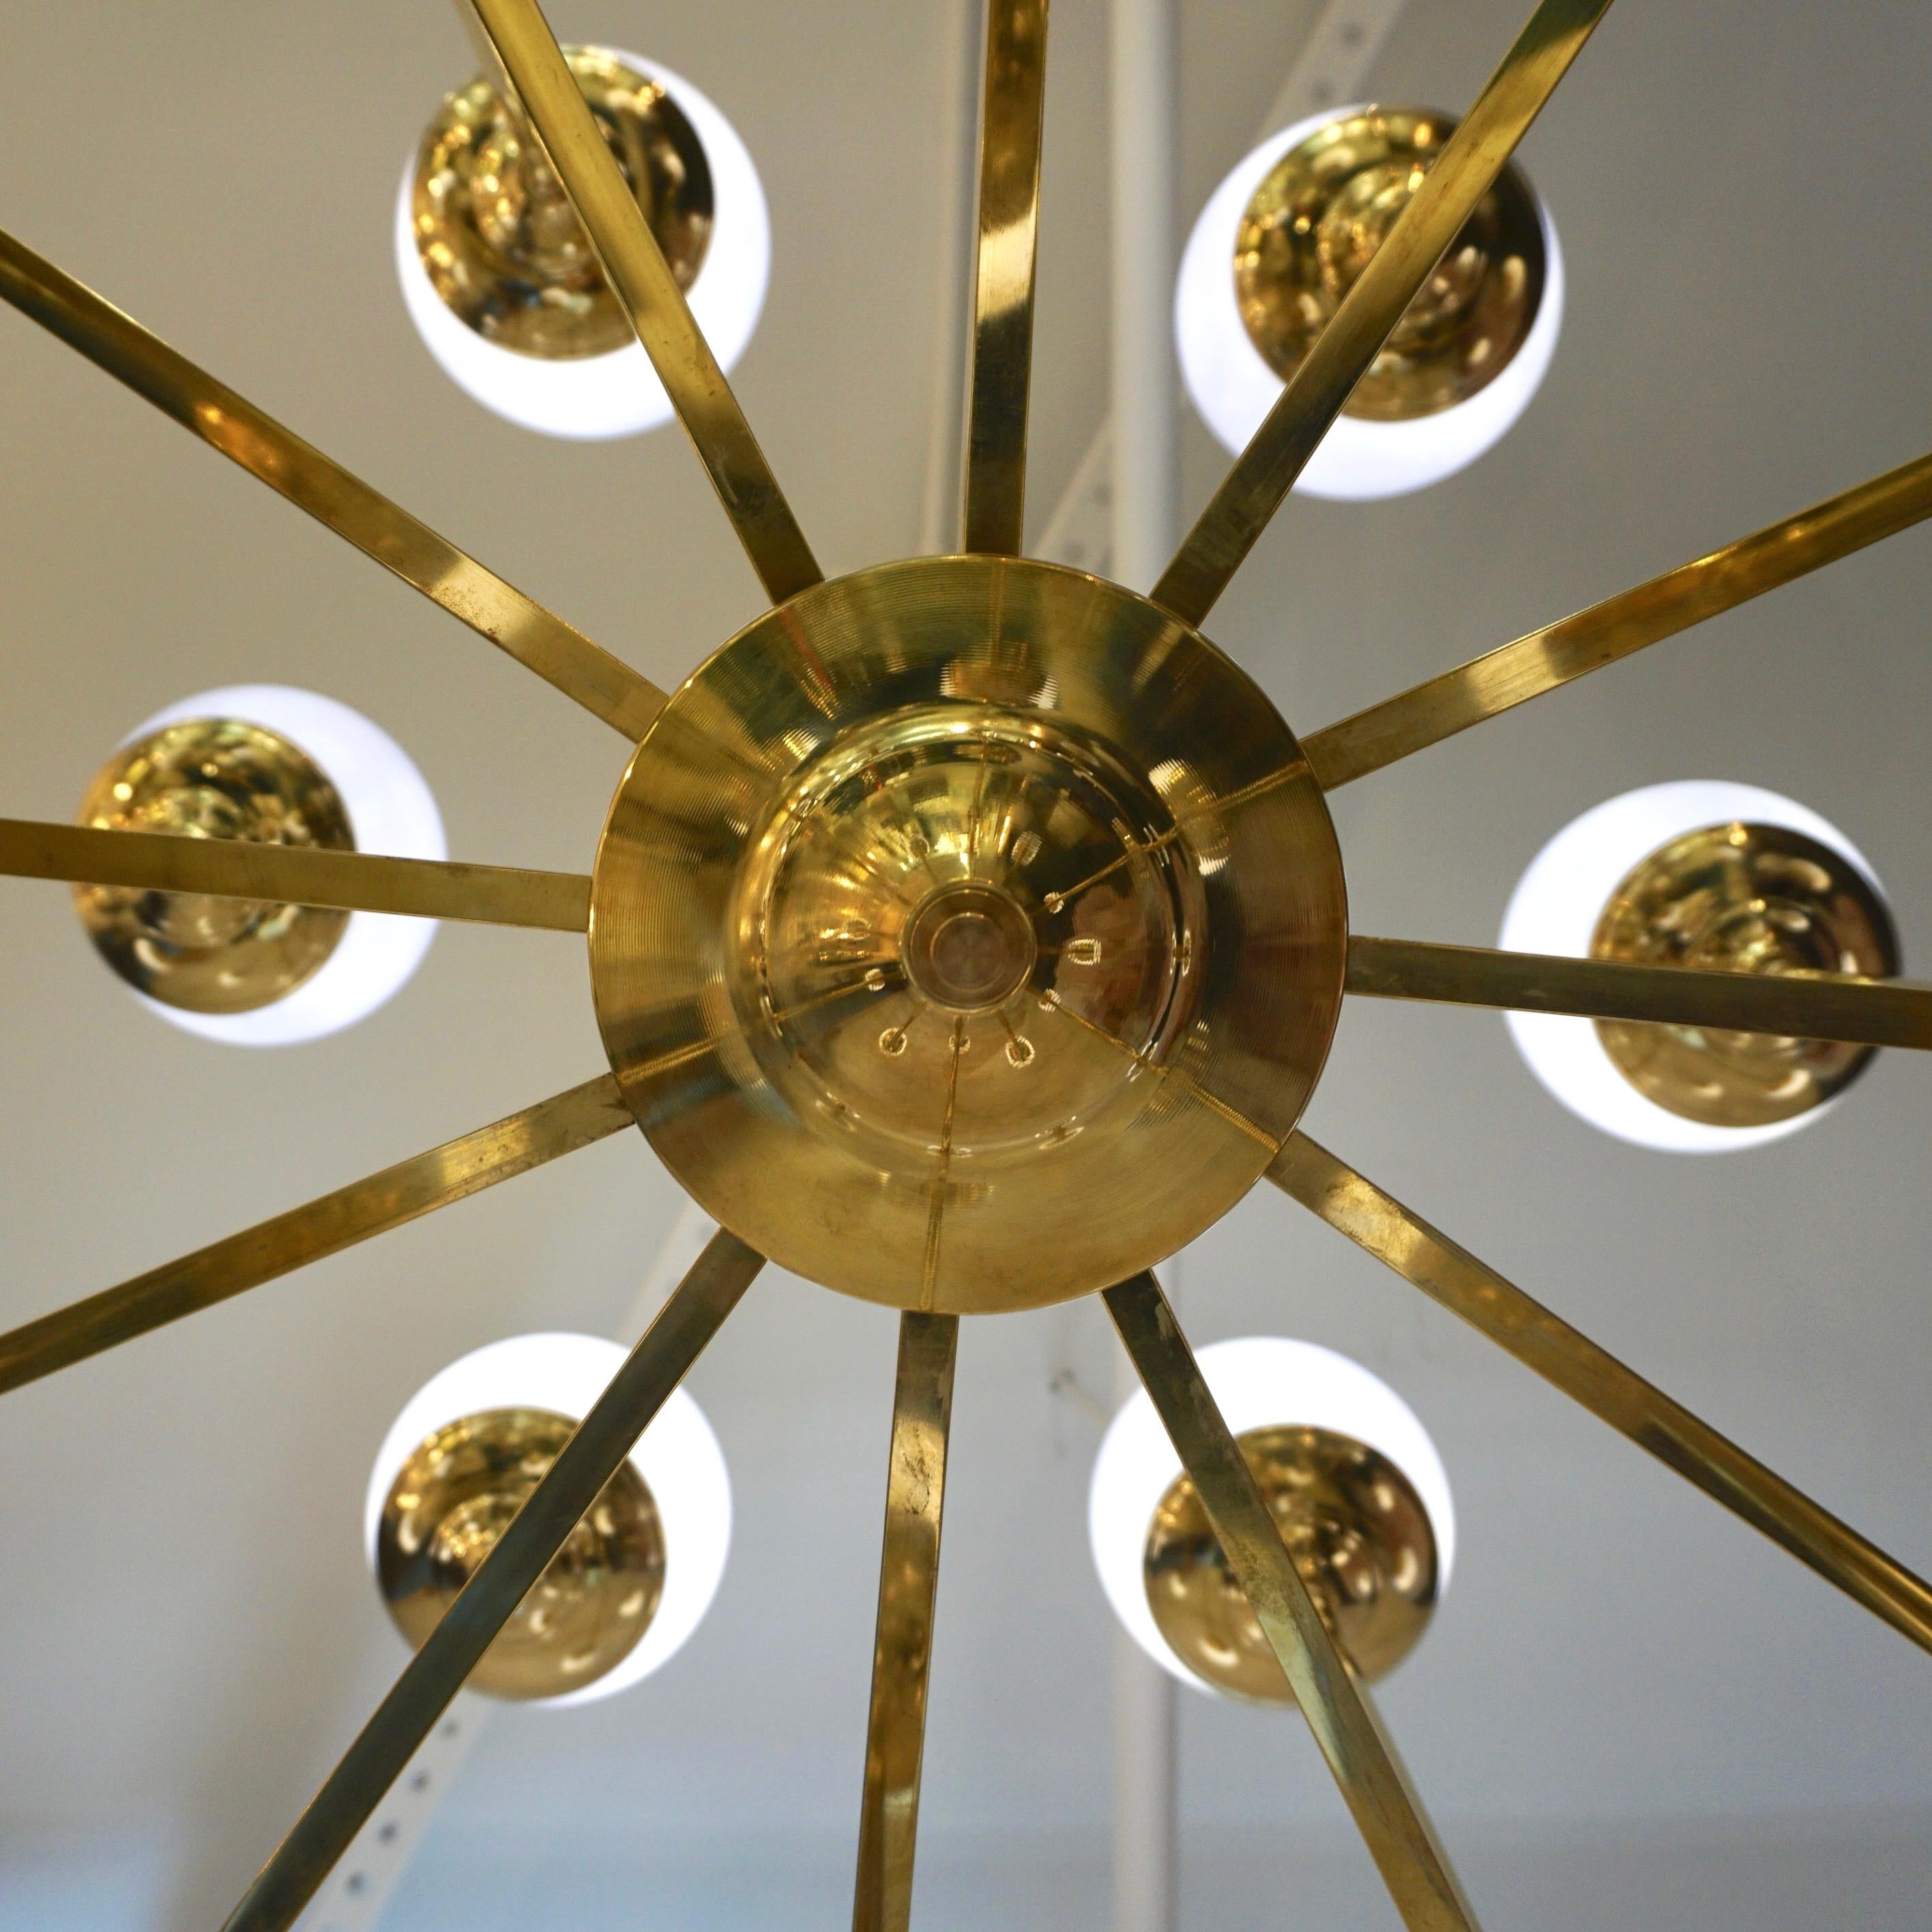 Zeitgenössischer, kreisförmiger Kronleuchter mit minimalistischem, geometrischem Design und Sputnik-Inspiration aus der Jahrhundertmitte, vollständig in Italien handgefertigt. Die Messingstruktur ist mit 24 mundgeblasenen Murano-Glaskugeln in einer